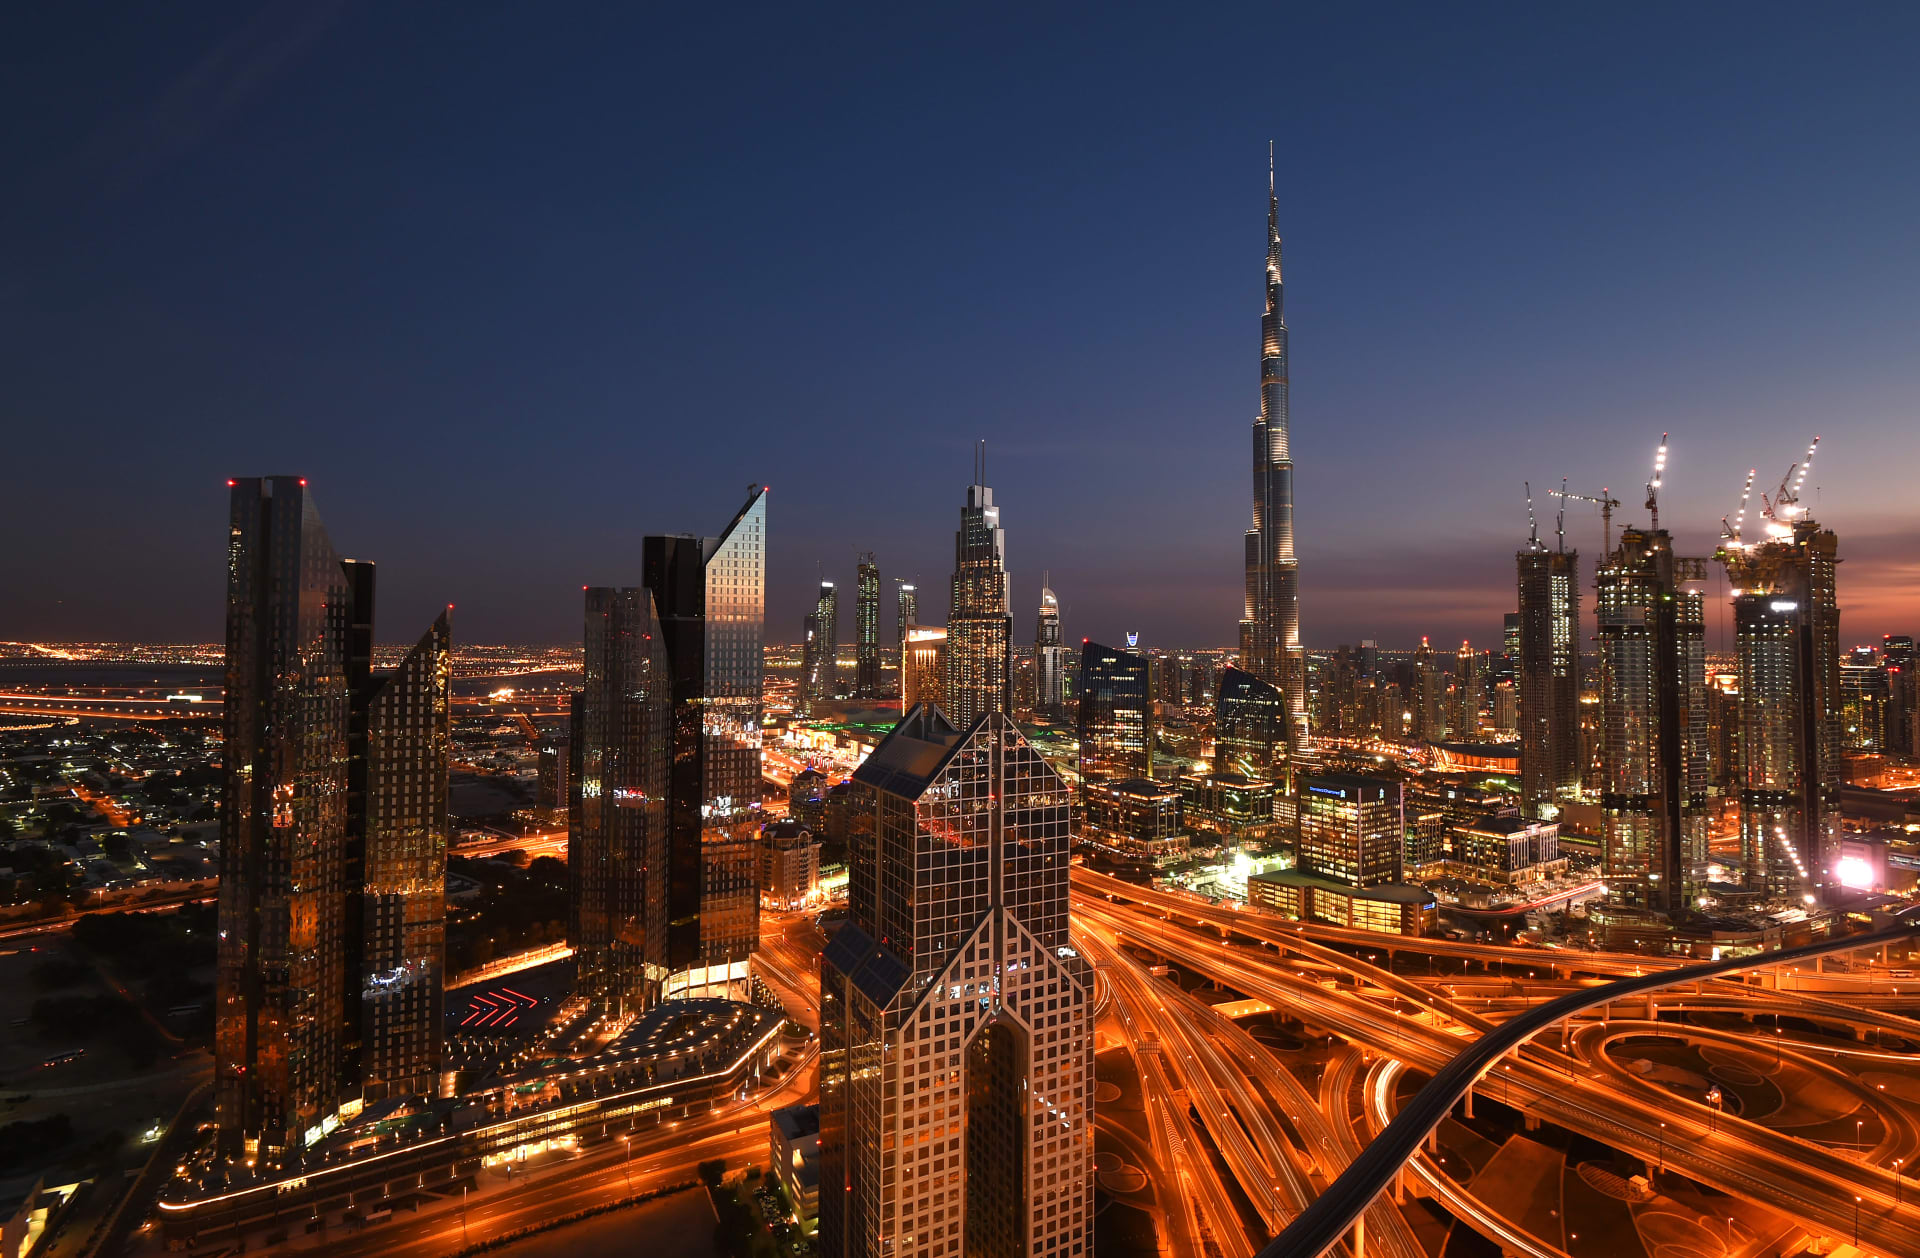 الإمارات الأولى بتقرير "غالوب" للأمن والنظام.. ومحمد بن راشد يُعلق